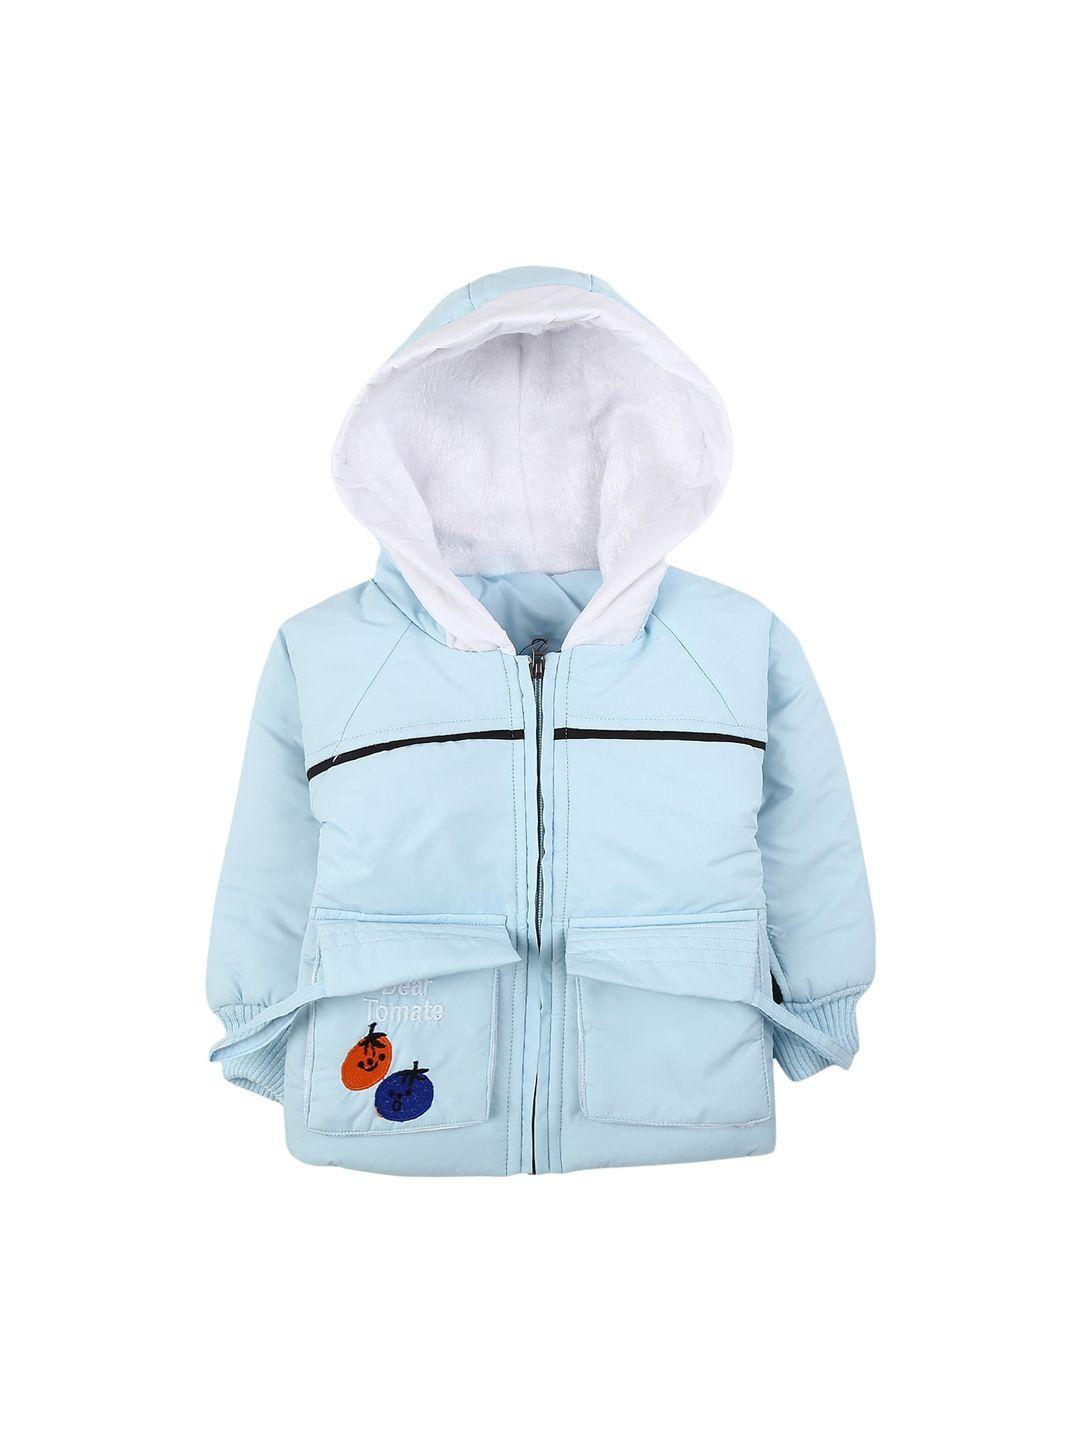 v-mart unisex kids blue acrylic lightweight bomber jacket